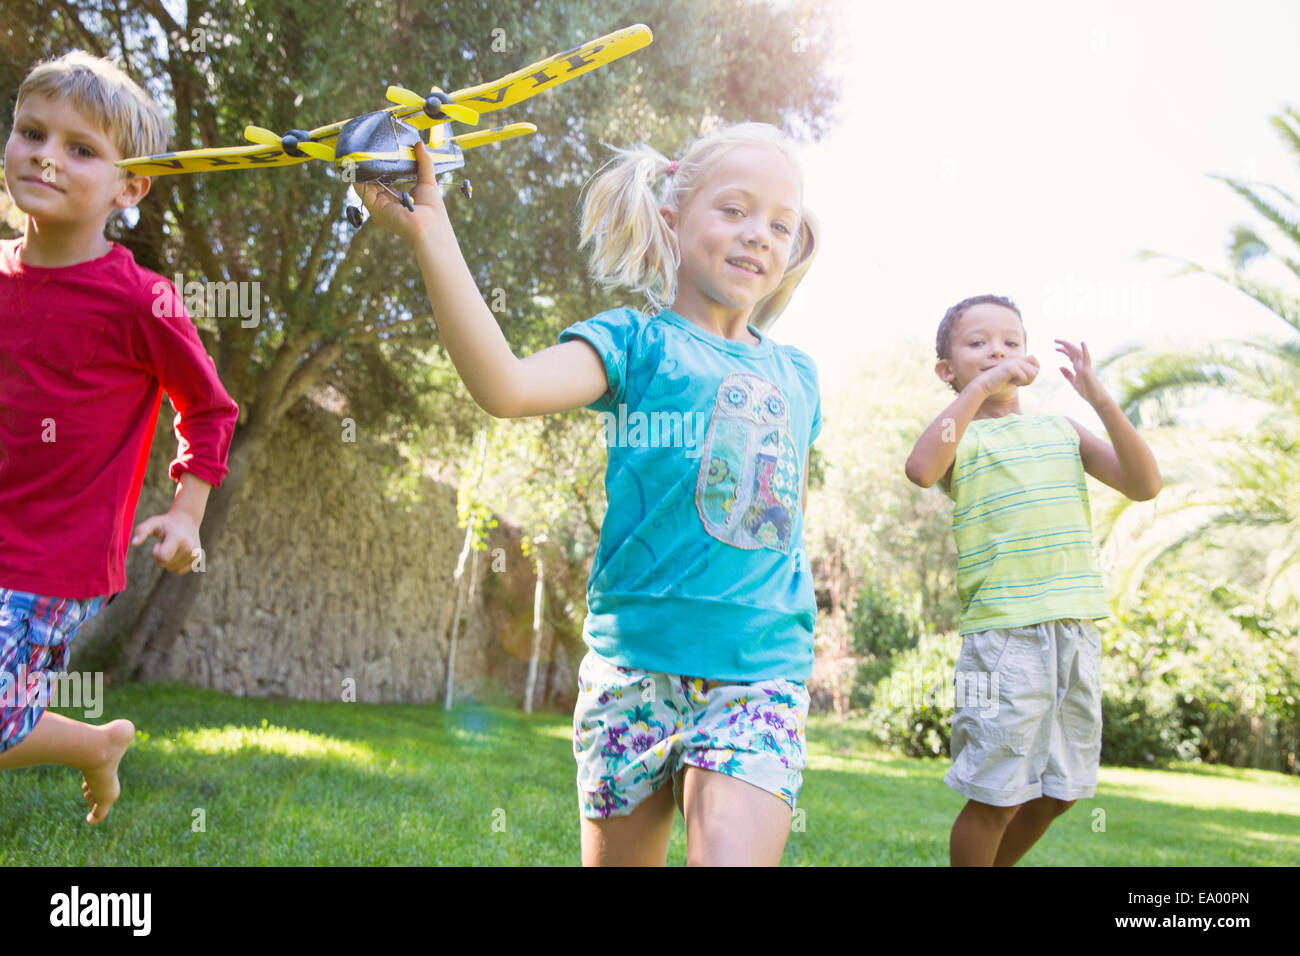 Trois enfants dans le jardin en marche avec toy airplane Banque D'Images